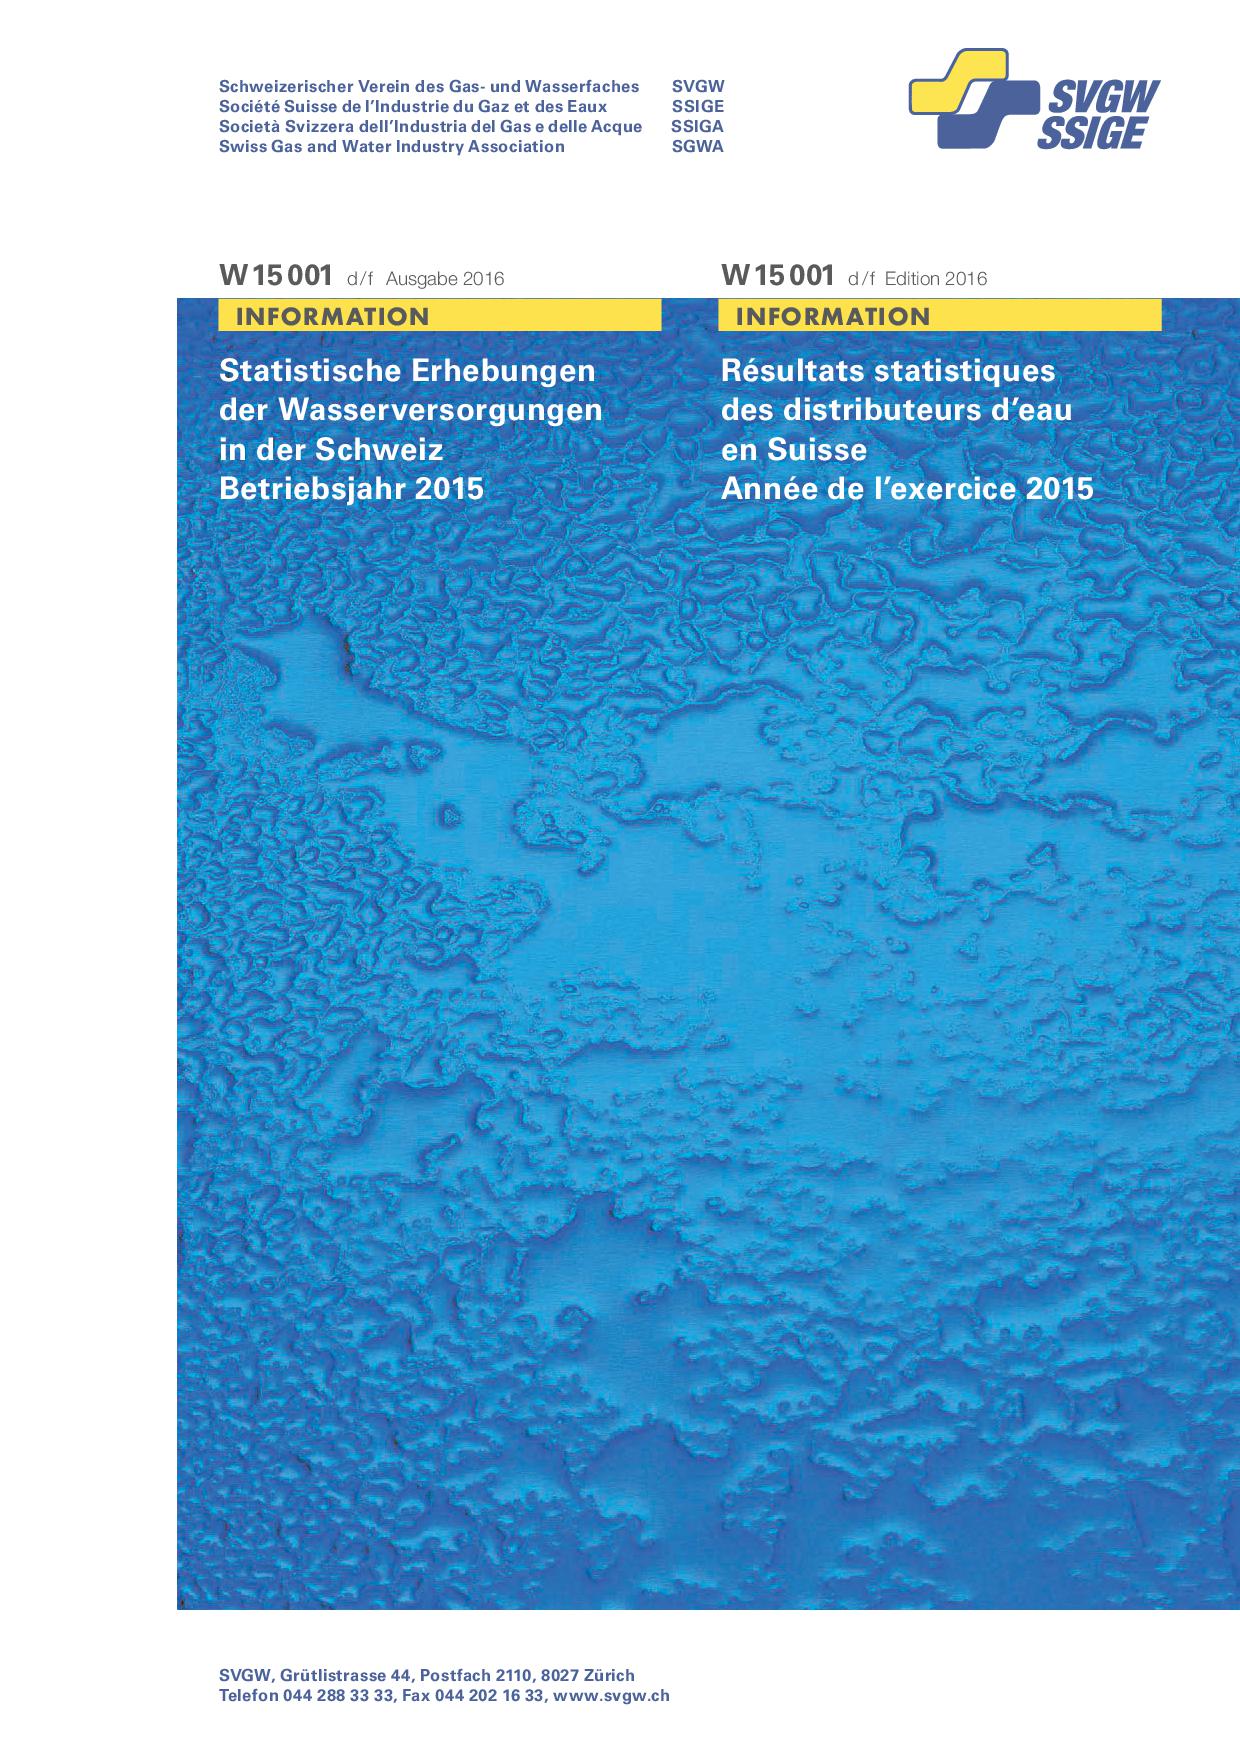 W15001 d/f Statistique d'eau 2016 (exercise 2015) (version complète)